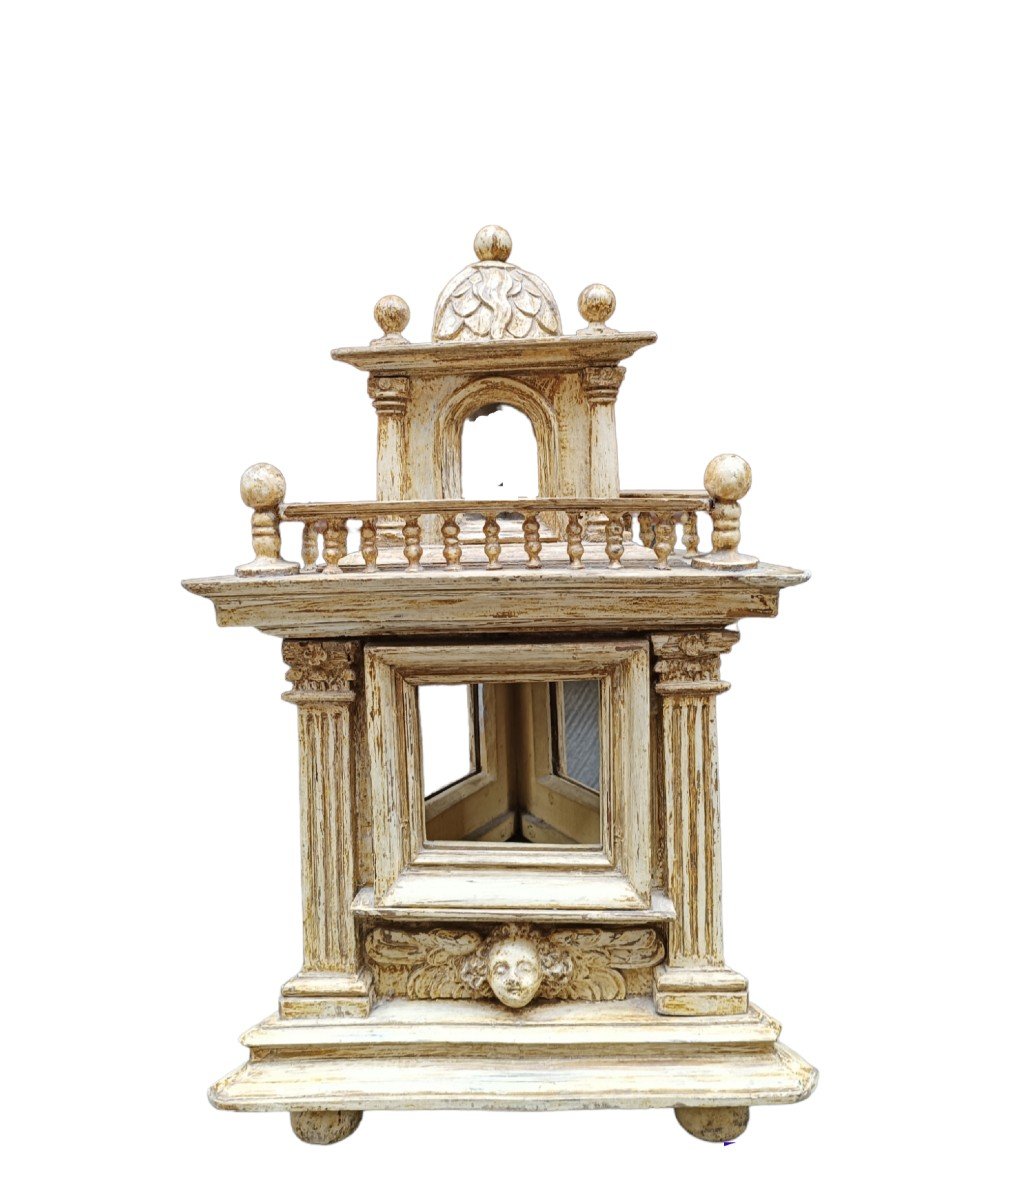 Insolito modello architettonico in legno intagliato e dipinto. Fine del XVIII secolo.